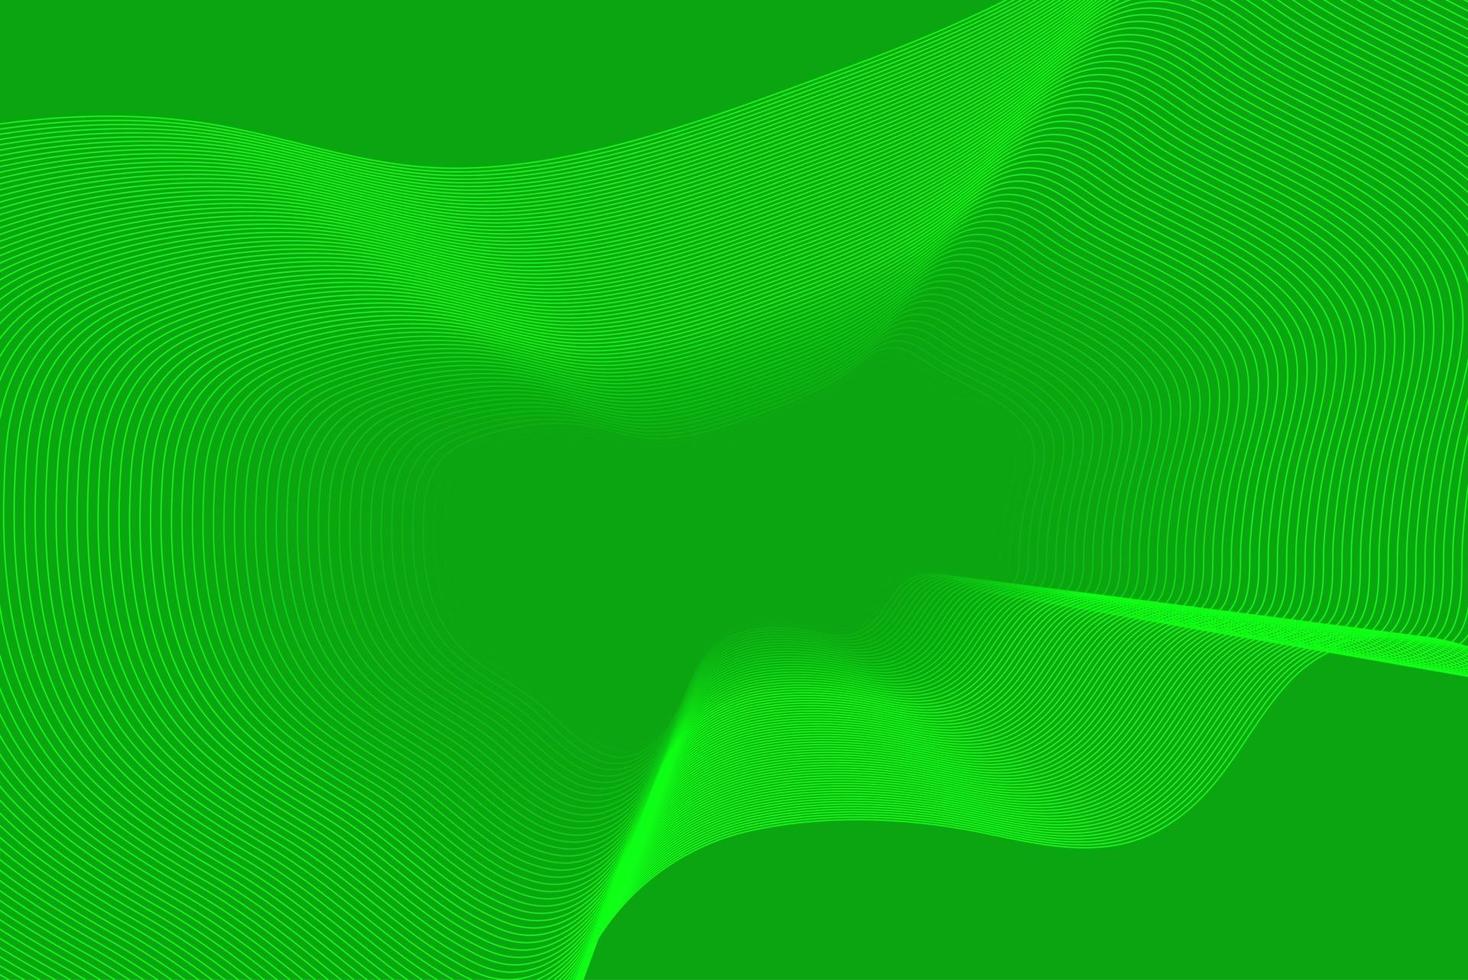 sfondo astratto verde con effetto lucido ondulato vettore isolato